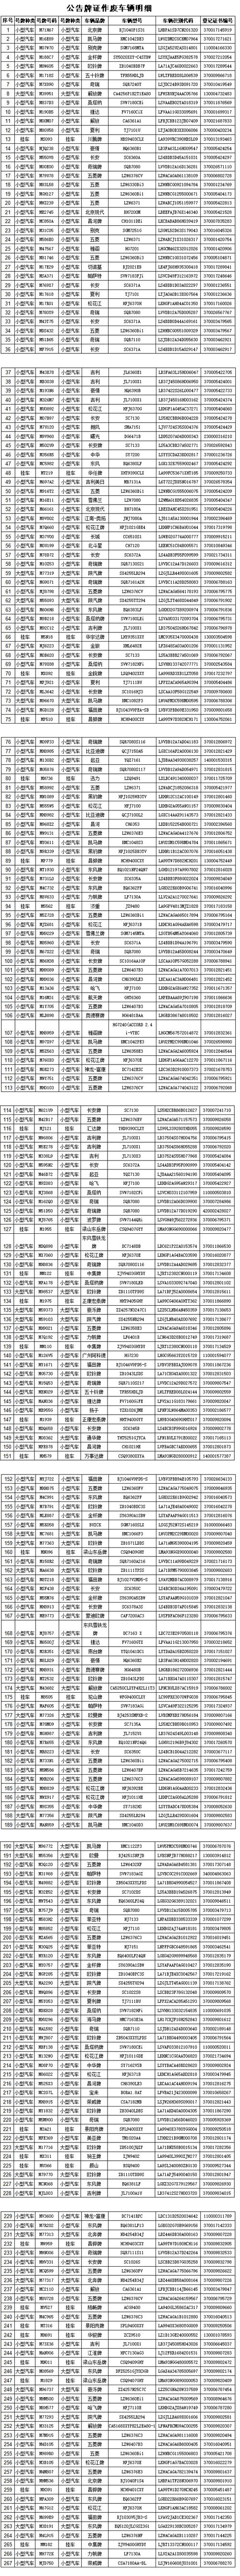 滨州市公安局交通警察支队-机动车牌证作废公告.jpg